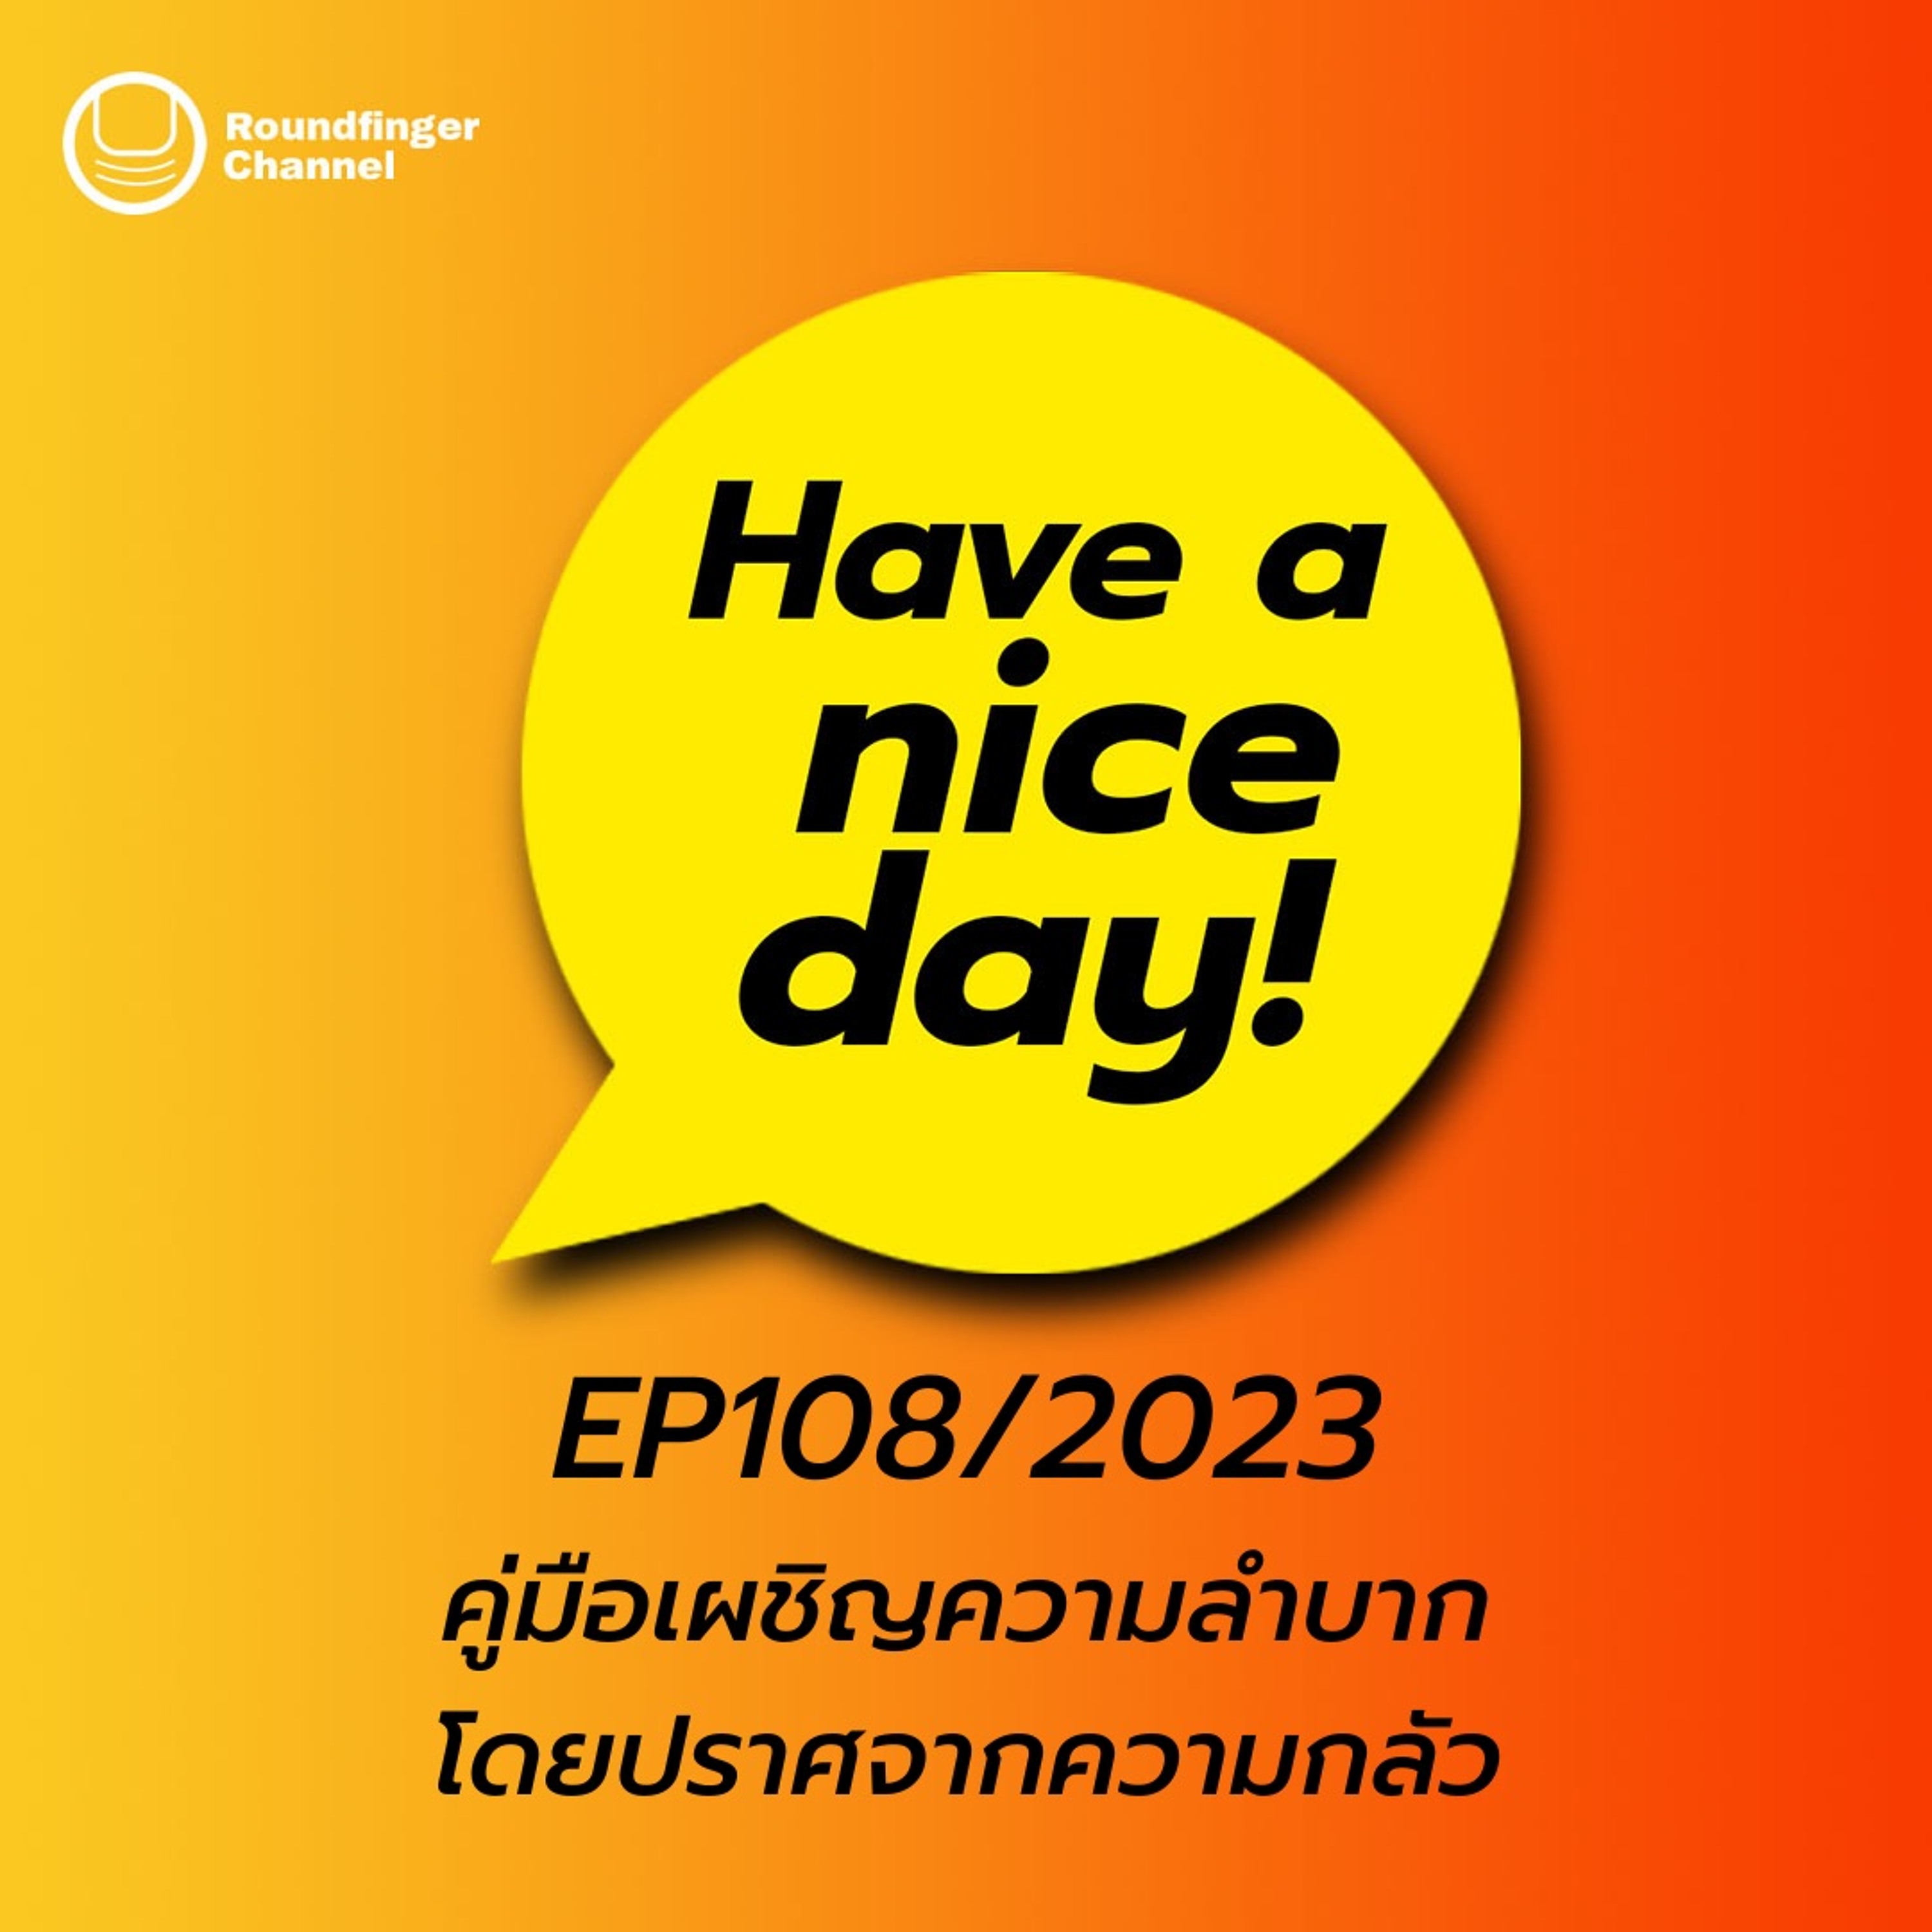 คู่มือเผชิญความลำบากโดยปราศจากความกลัว | Have A Nice Day! EP108/2023